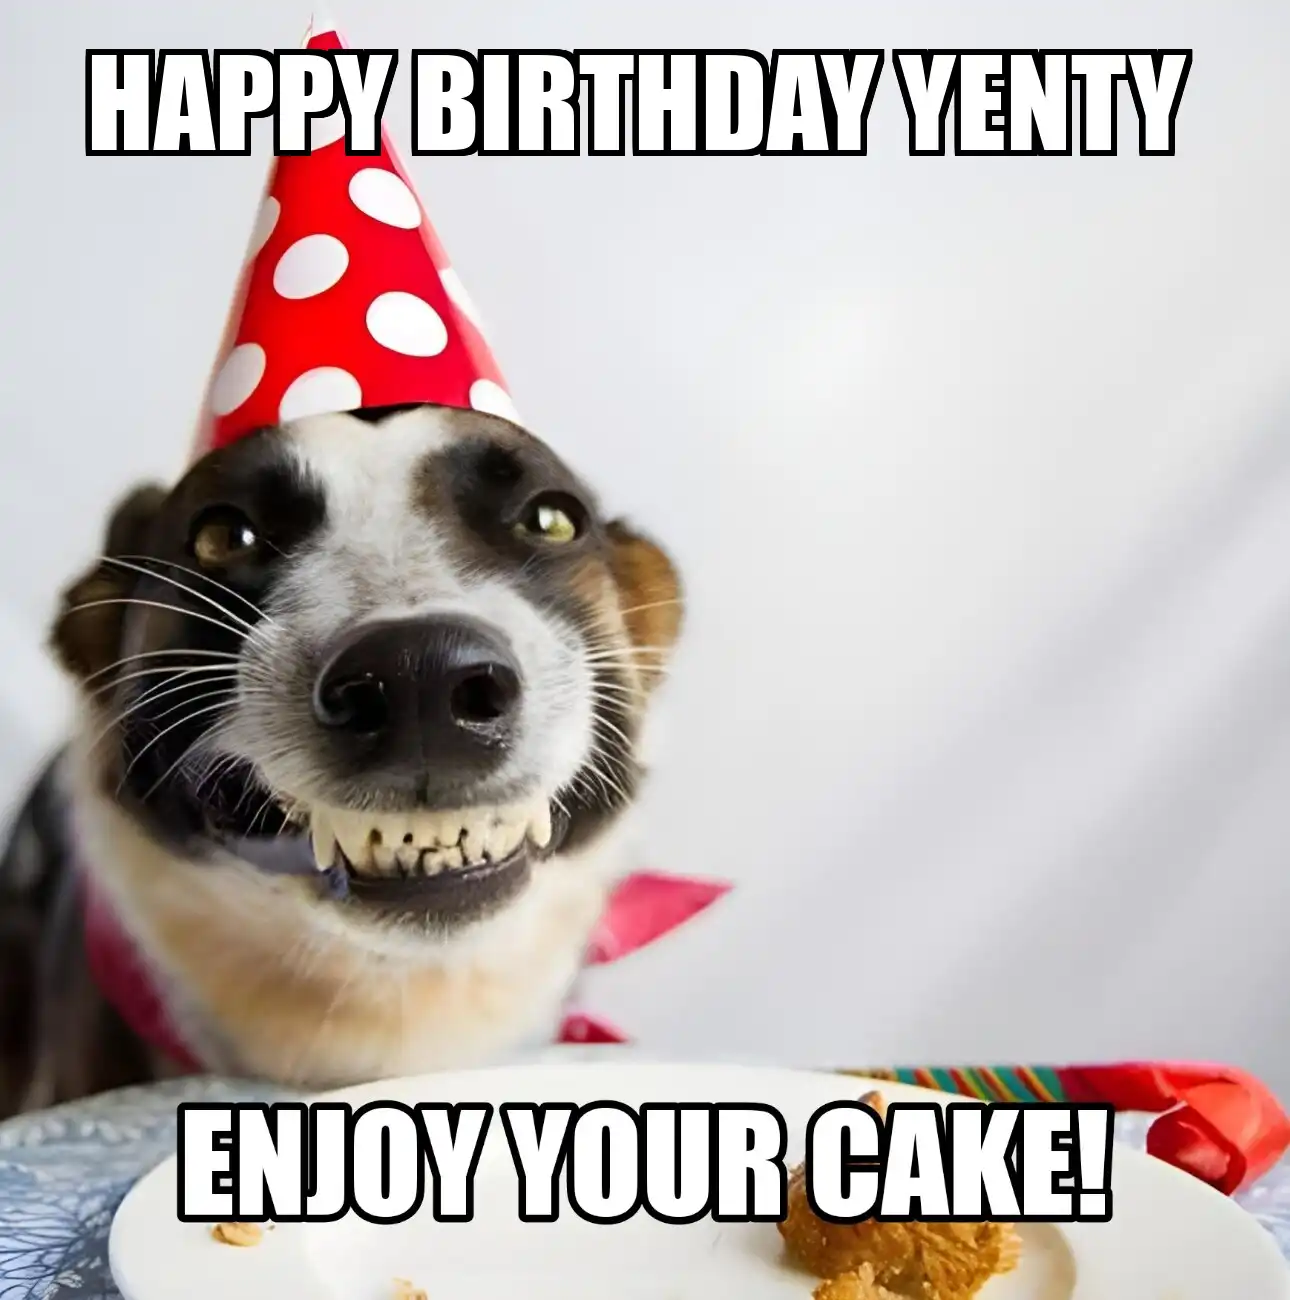 Happy Birthday Yenty Enjoy Your Cake Dog Meme